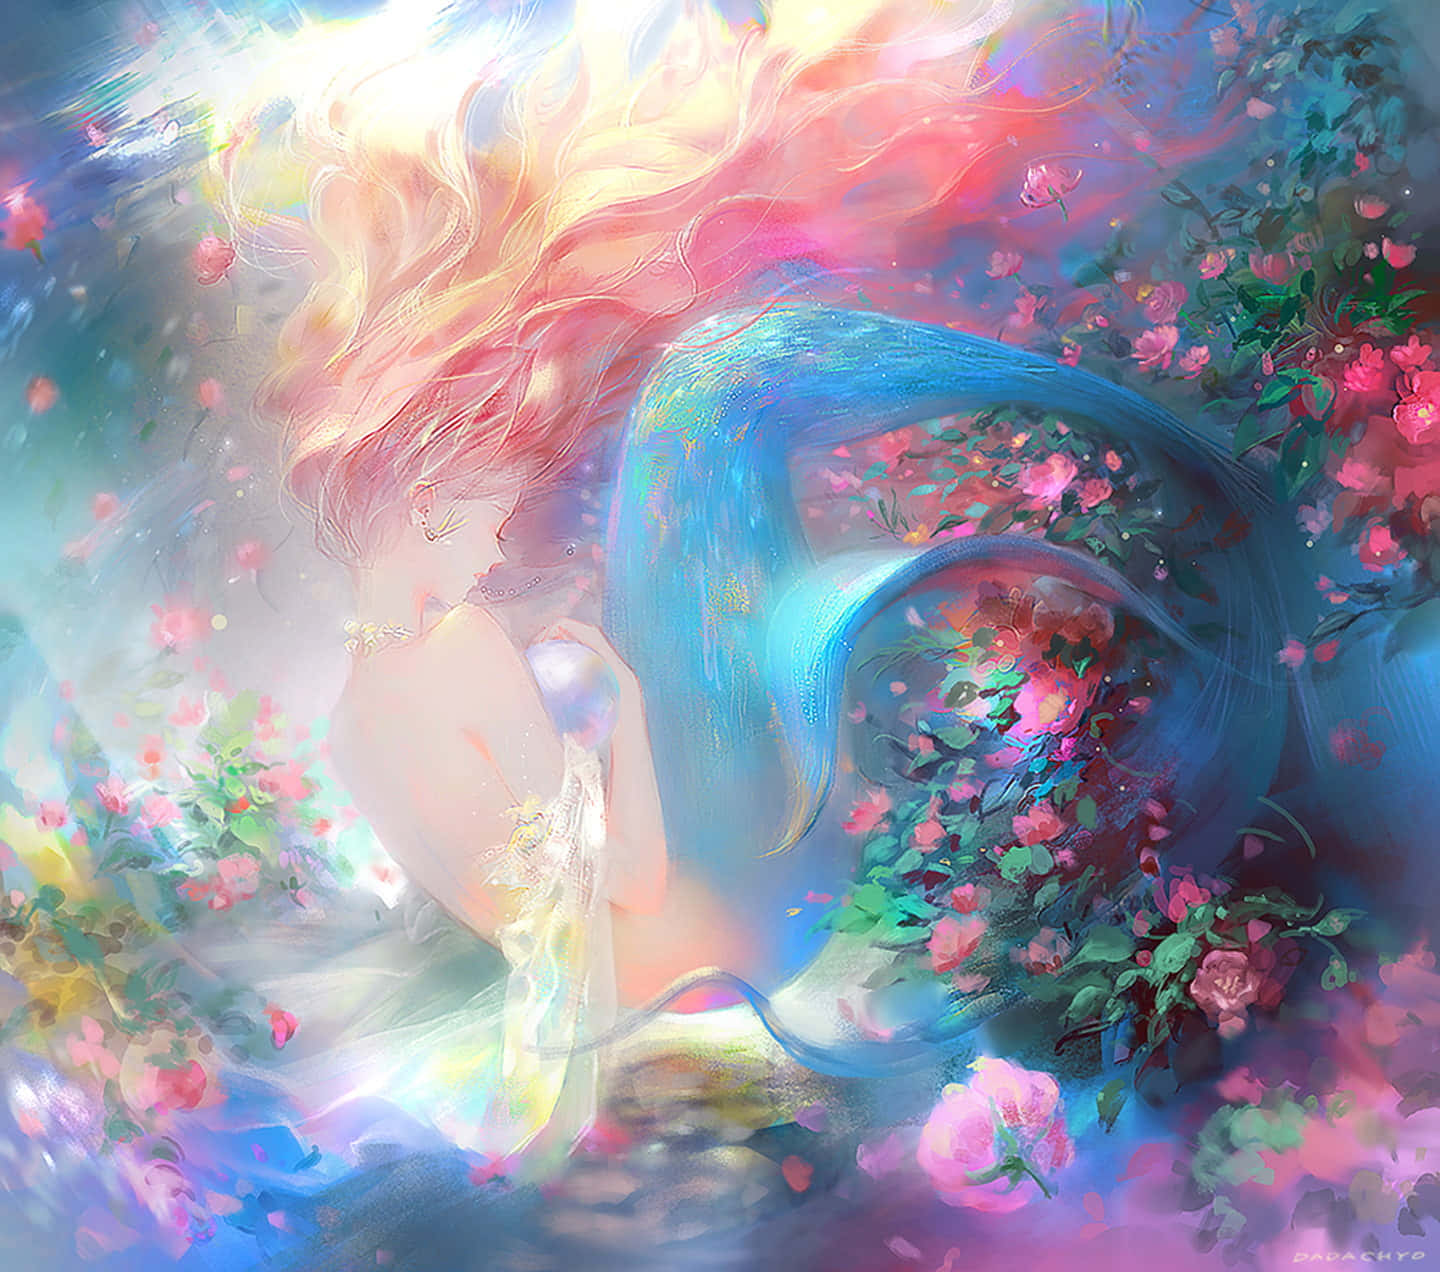 Immaginedi Colore Fantasioso Di Una Principessa Sirena.